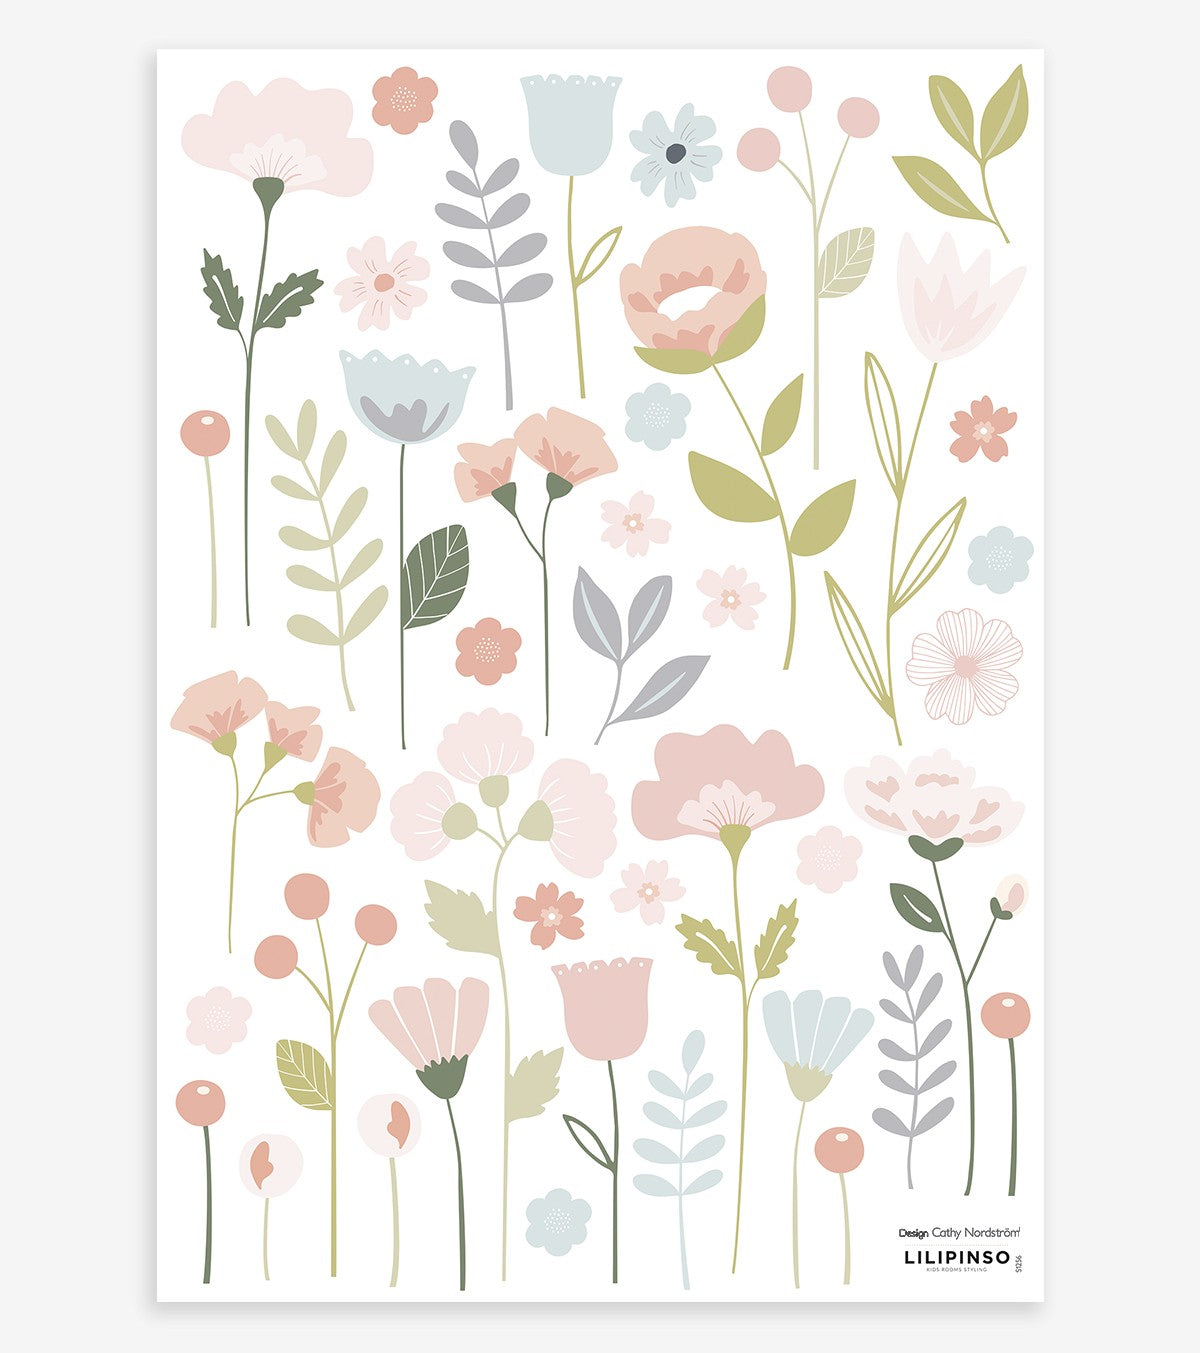 Planches de stickers imprimés fleurs du printemps pour résine - Multicolore  x2 - Perles & Co